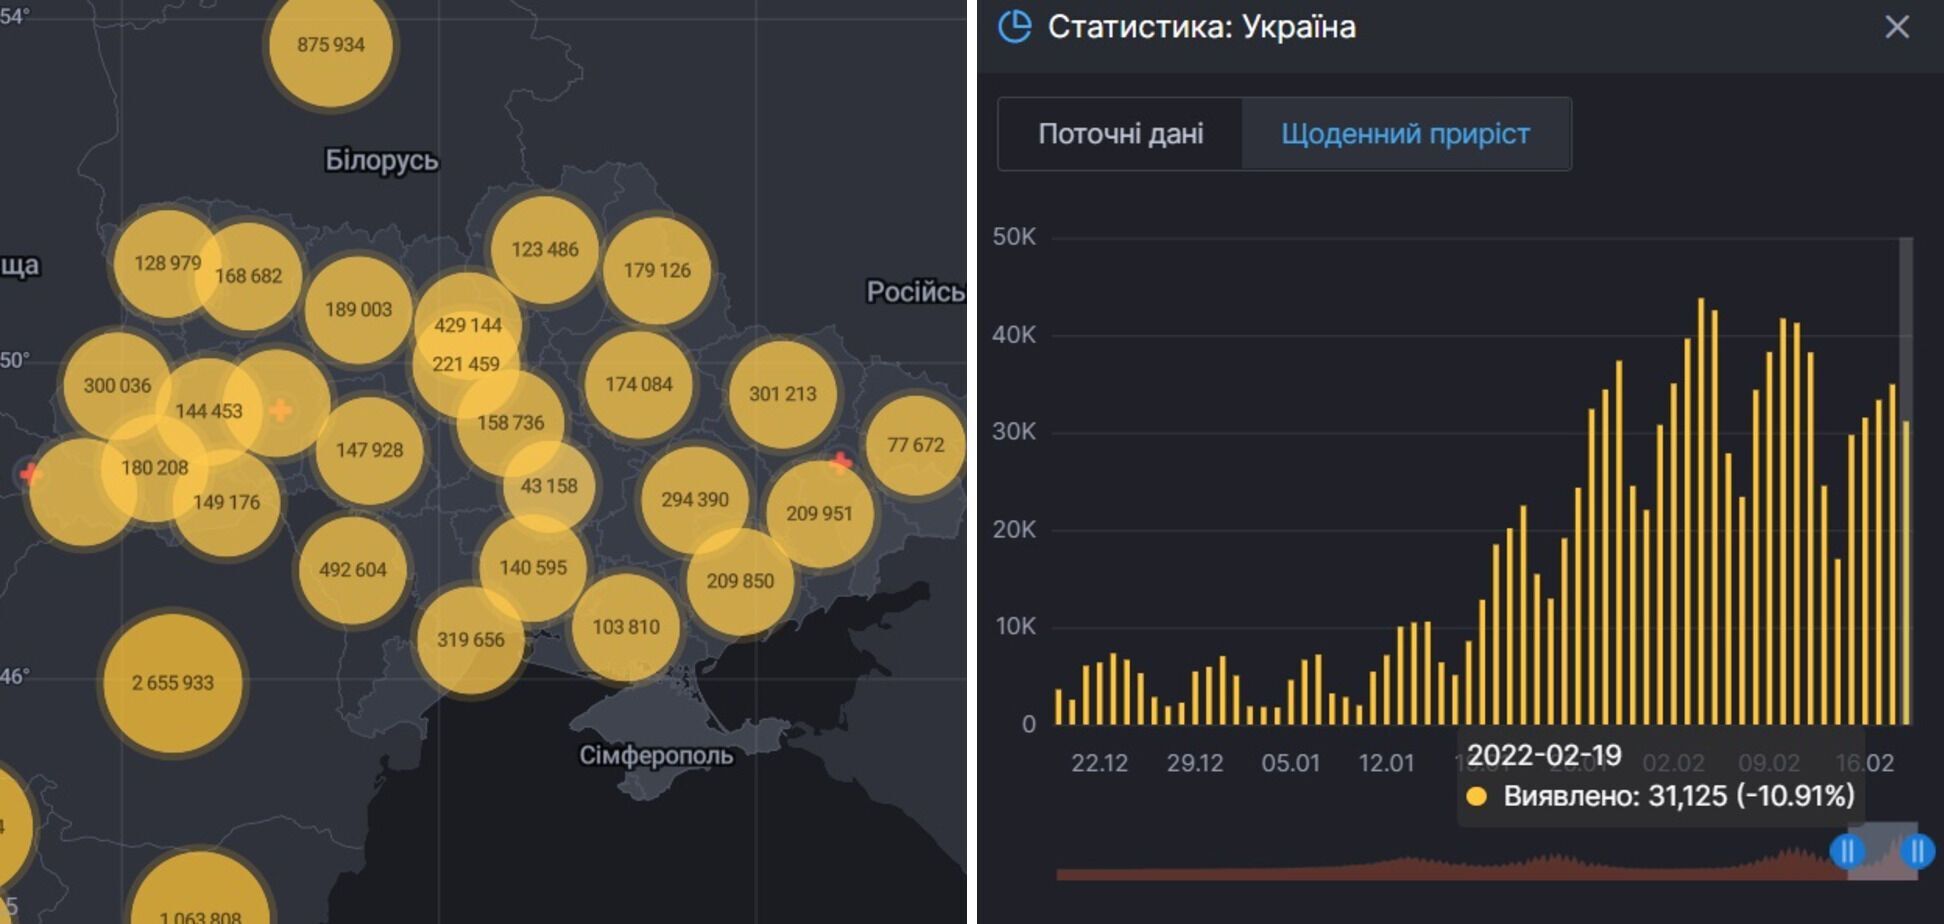 Загальна кількість хворих в Україні та динаміка їх виявлення.